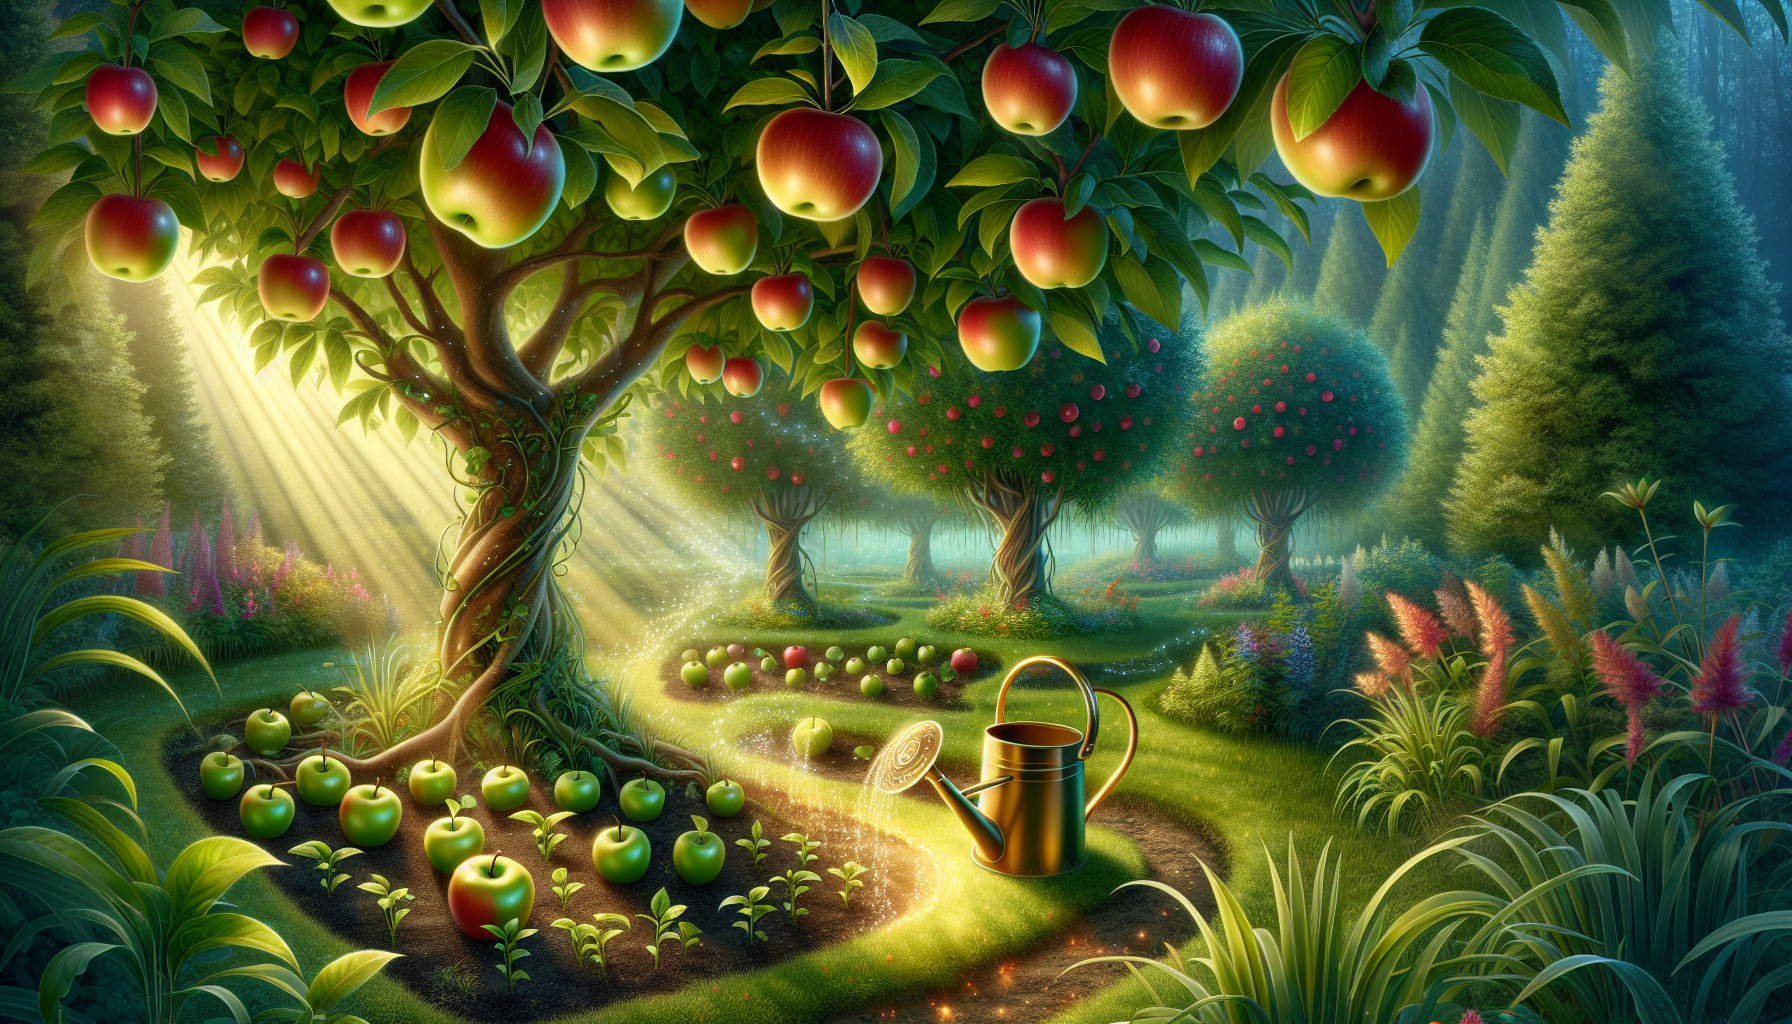 découvrez le secret pour des arbres fruitiers exceptionnels avec nos conseils de jardinage. apprenez à cultiver vos propres fruits avec succès.